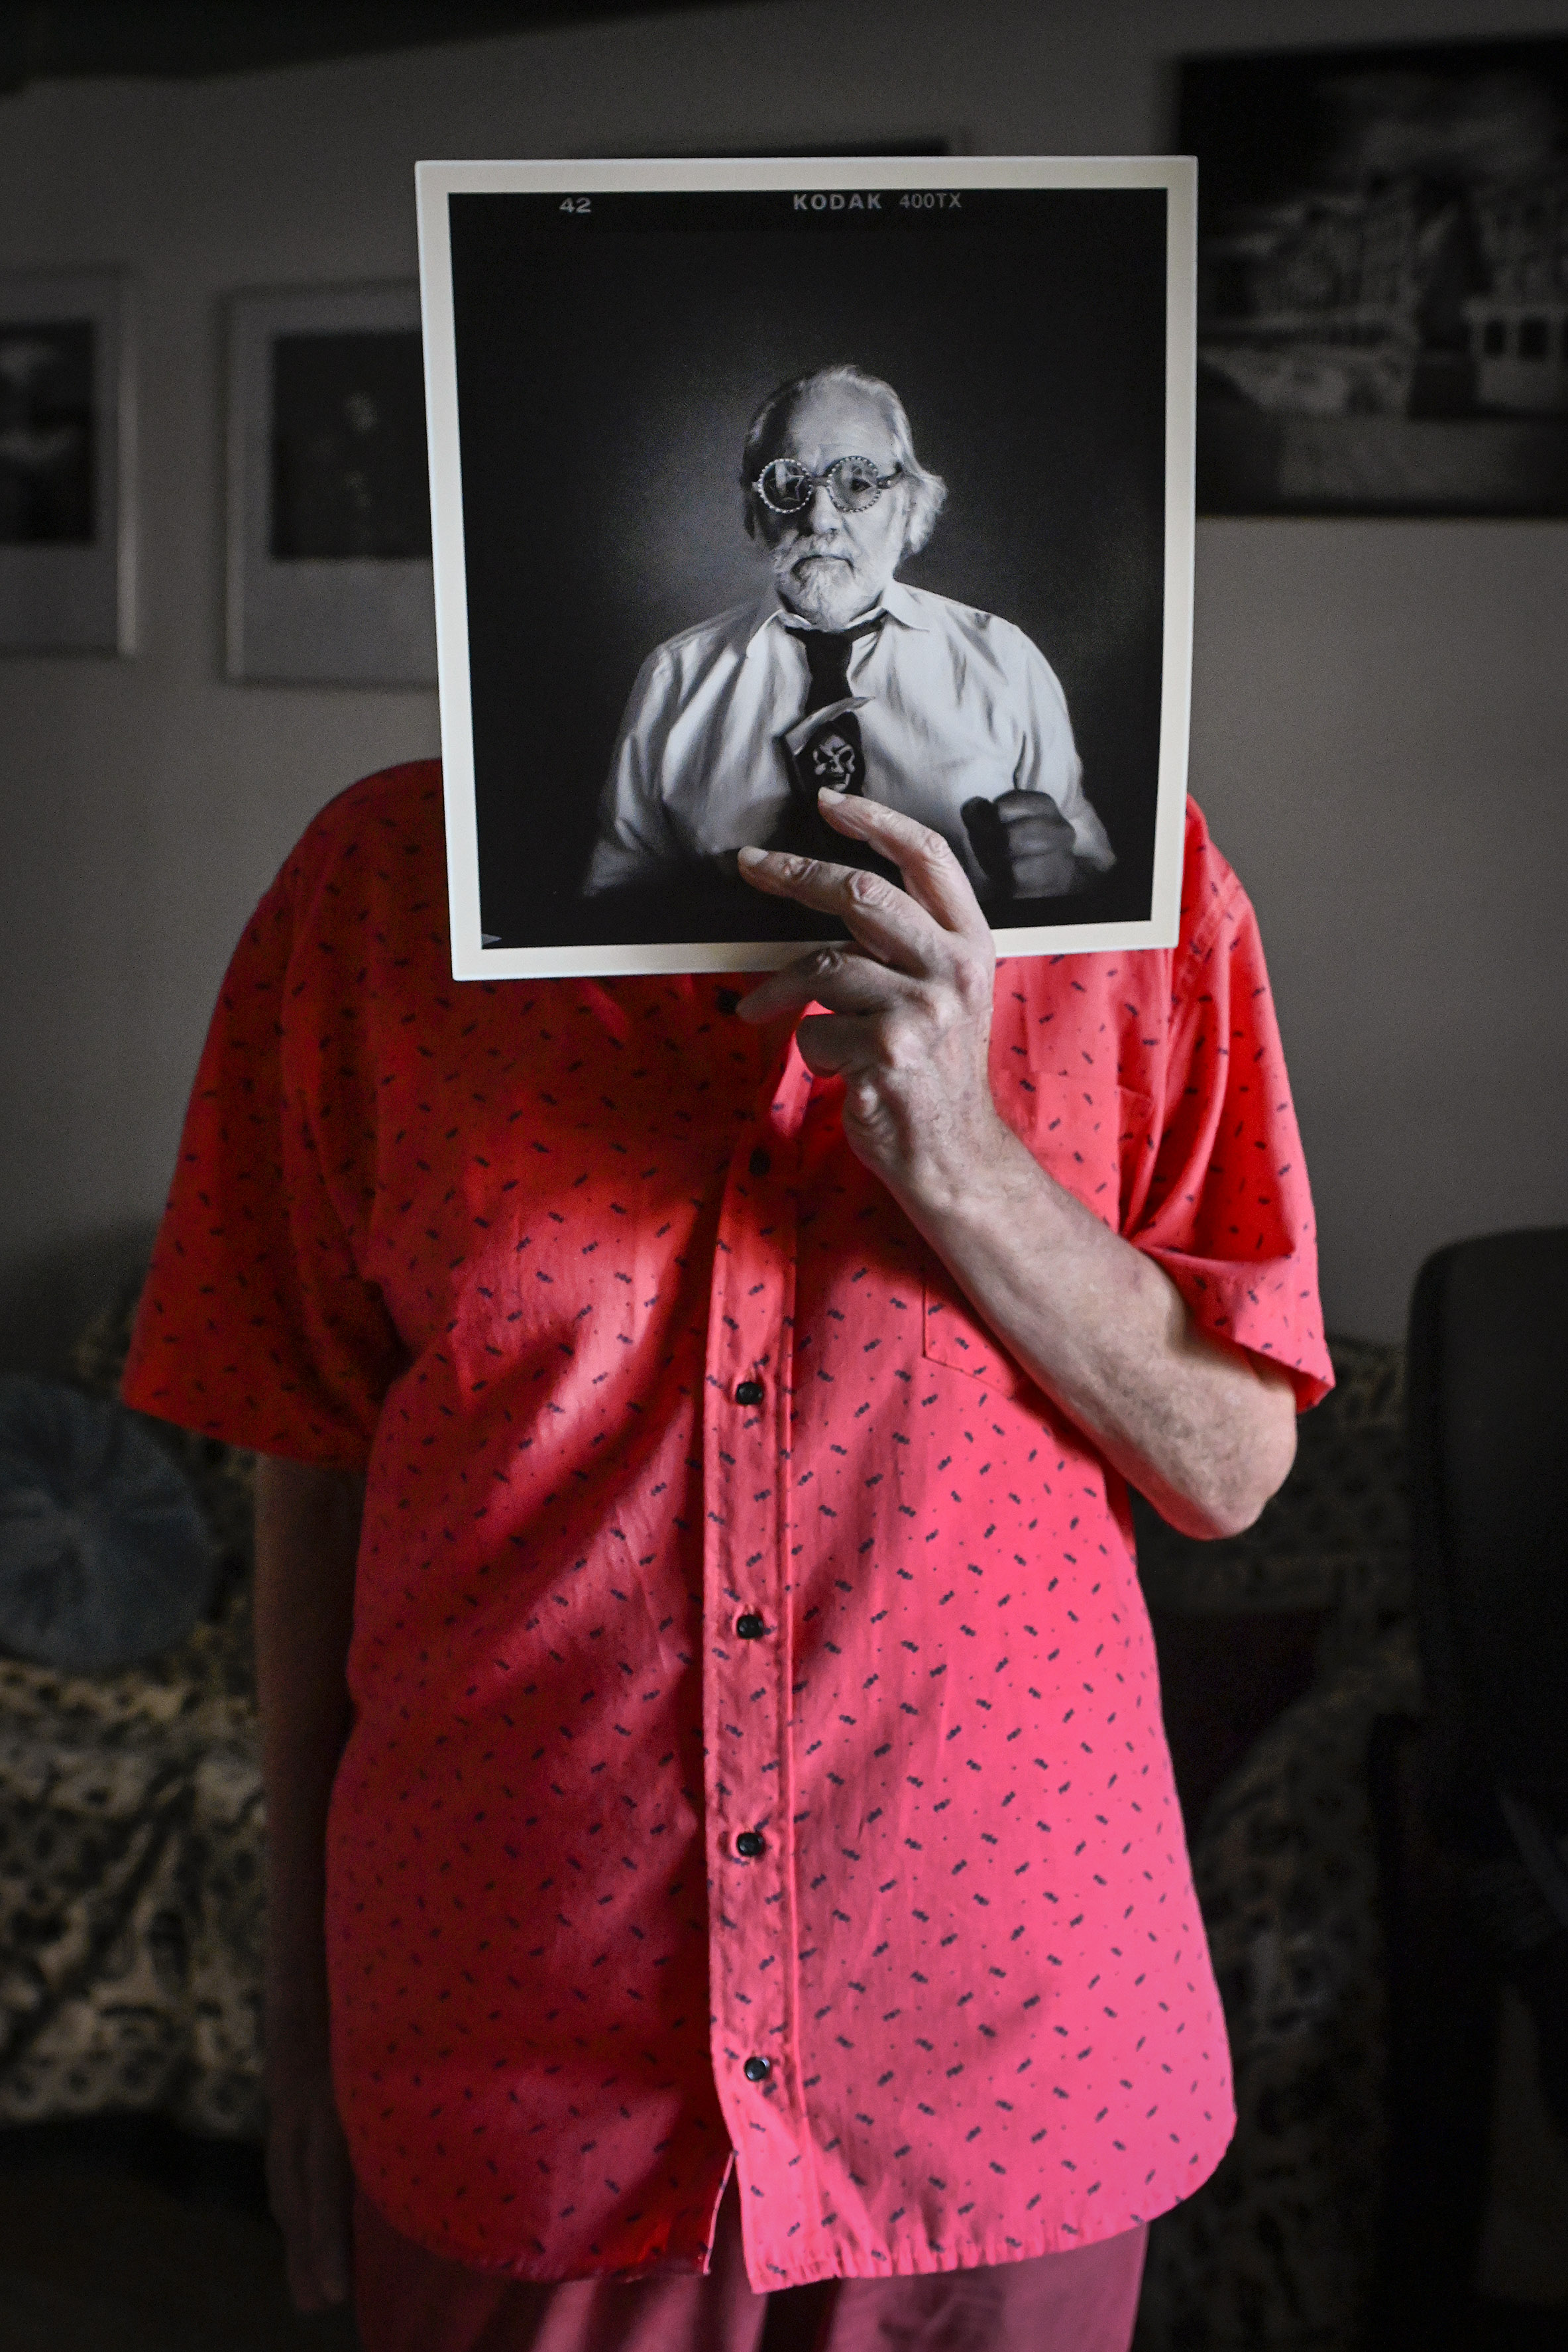 Con su autorretrato, que forma parte de la muestra "Fotógrafos Contemporáneos" que presentó en La Puerta Roja Estudio